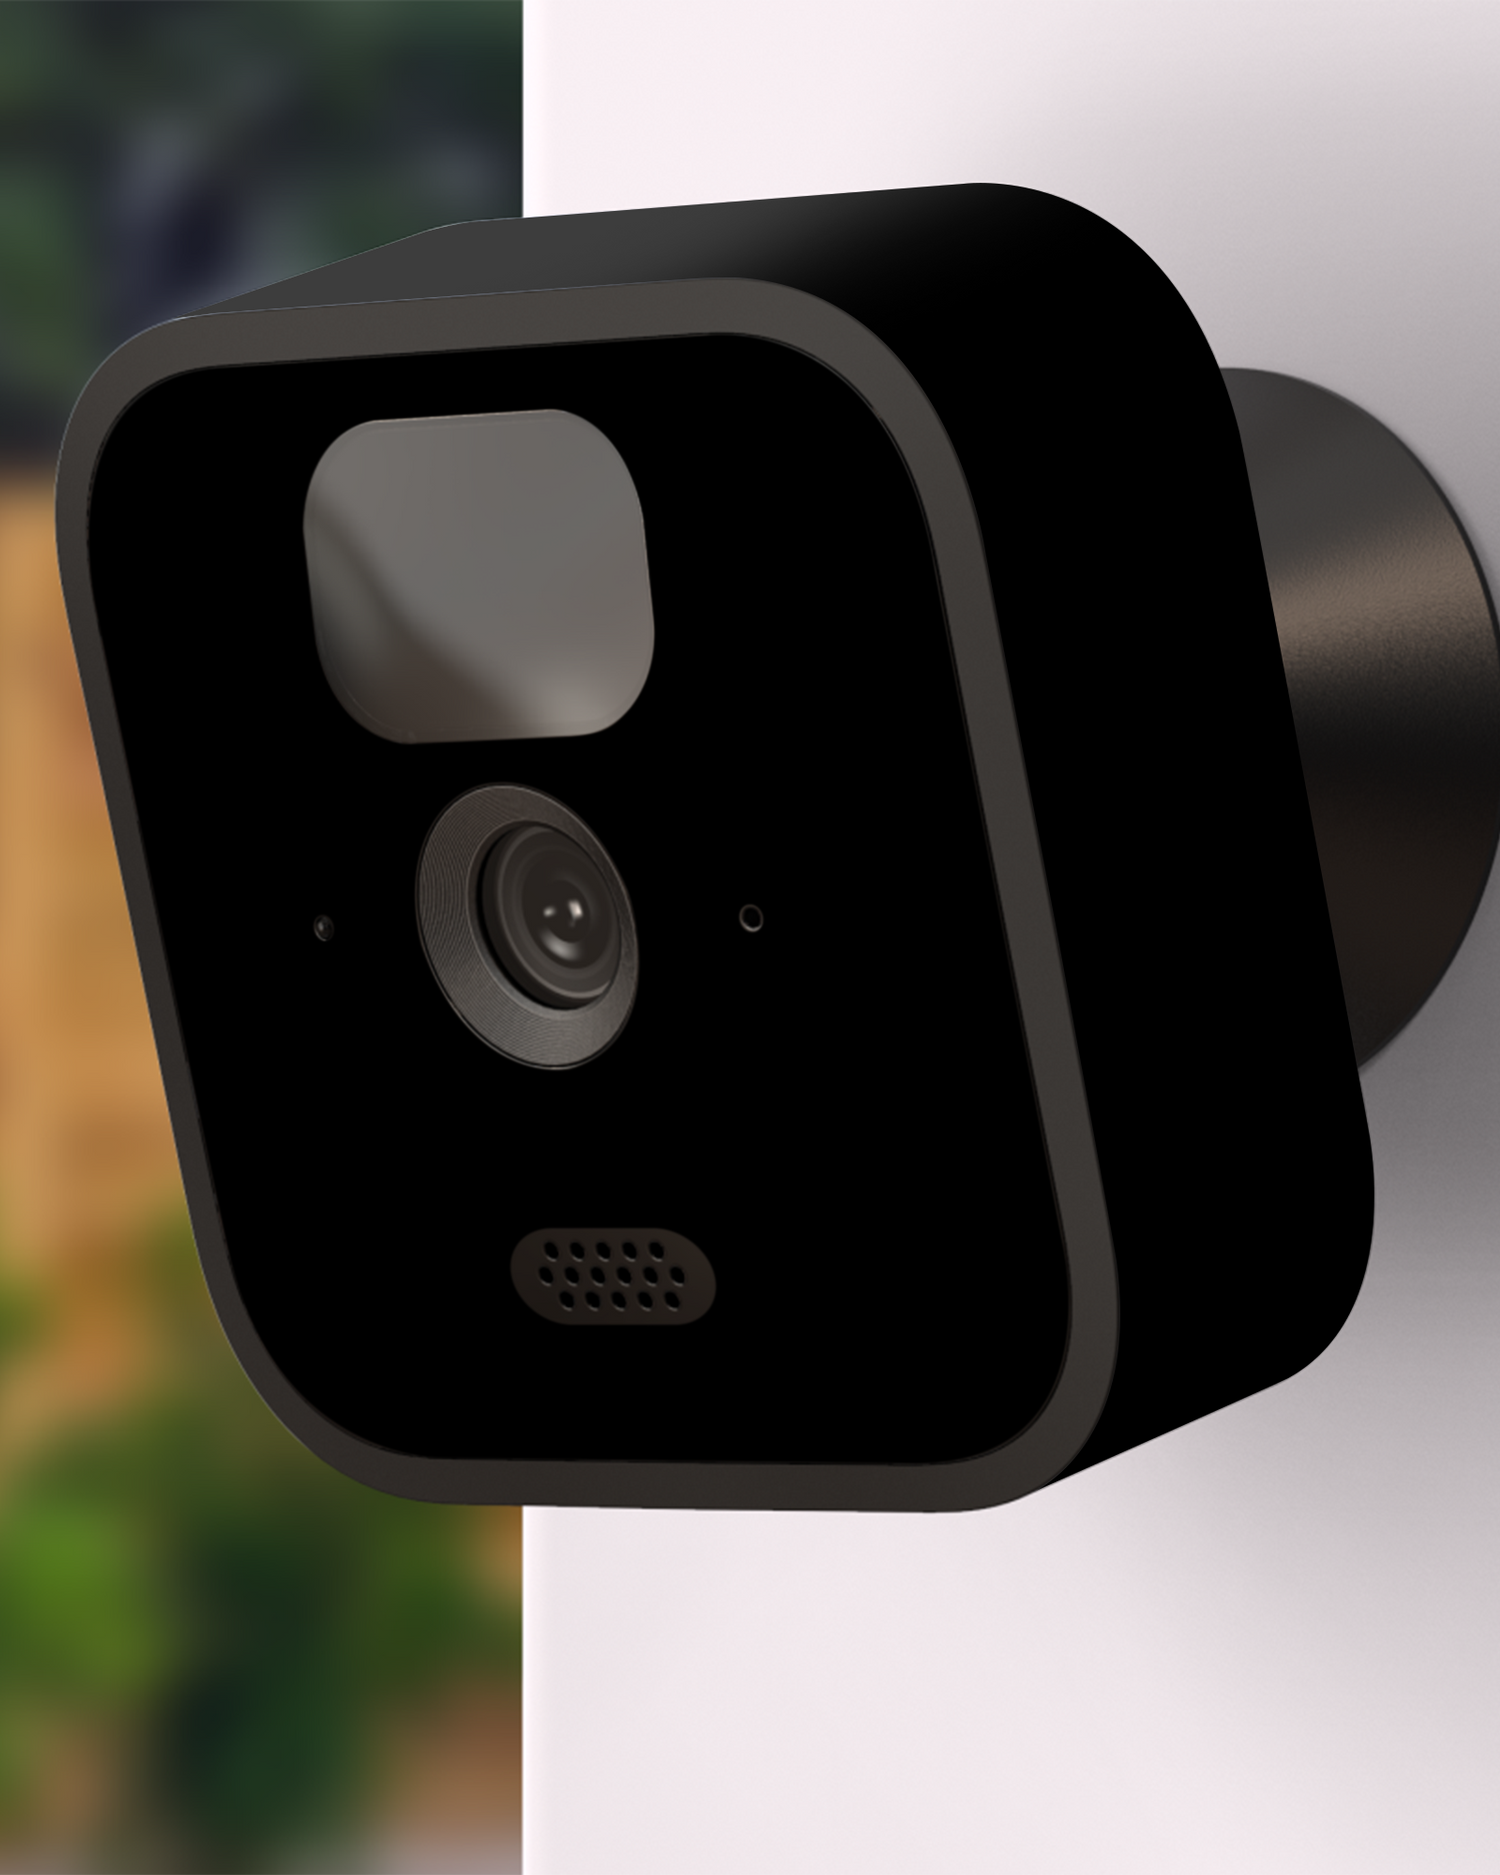 ISG Black Kamera Aufkleber Blink Outdoor (2020) an Außenwand angebracht